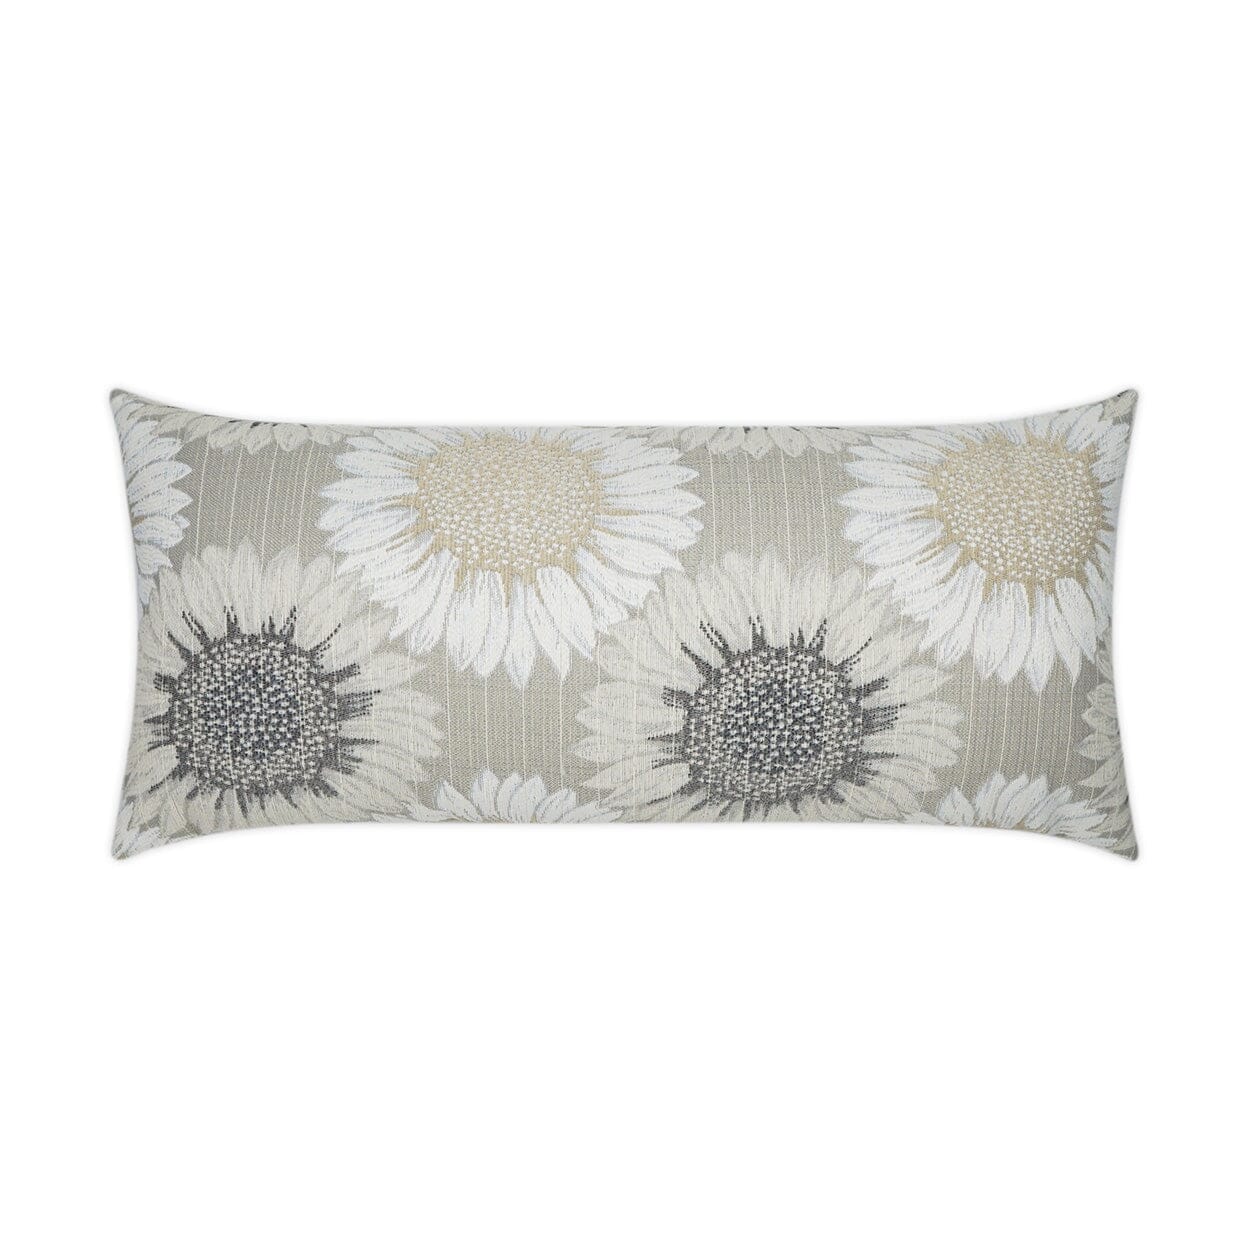 D.V. Kap 12" x 24" Outdoor Lumbar Pillow | Daisy Chain Sand Pillows D.V Kap Outdoor